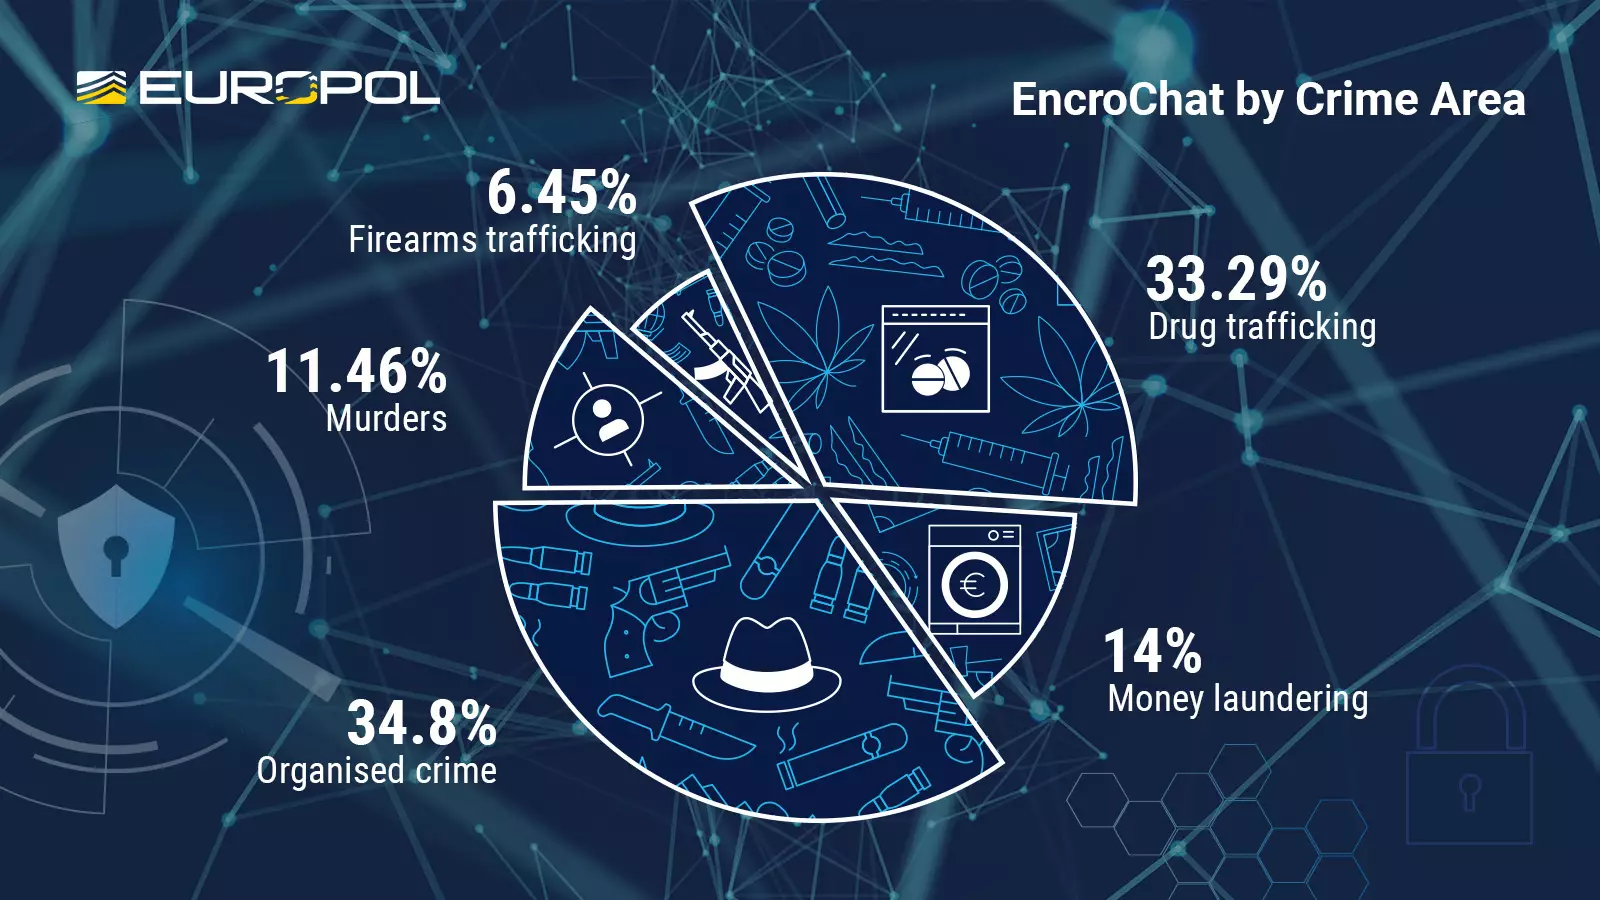 EncroChat dismantling led to 6,558 arrests and the seizure of 9M in criminal funds